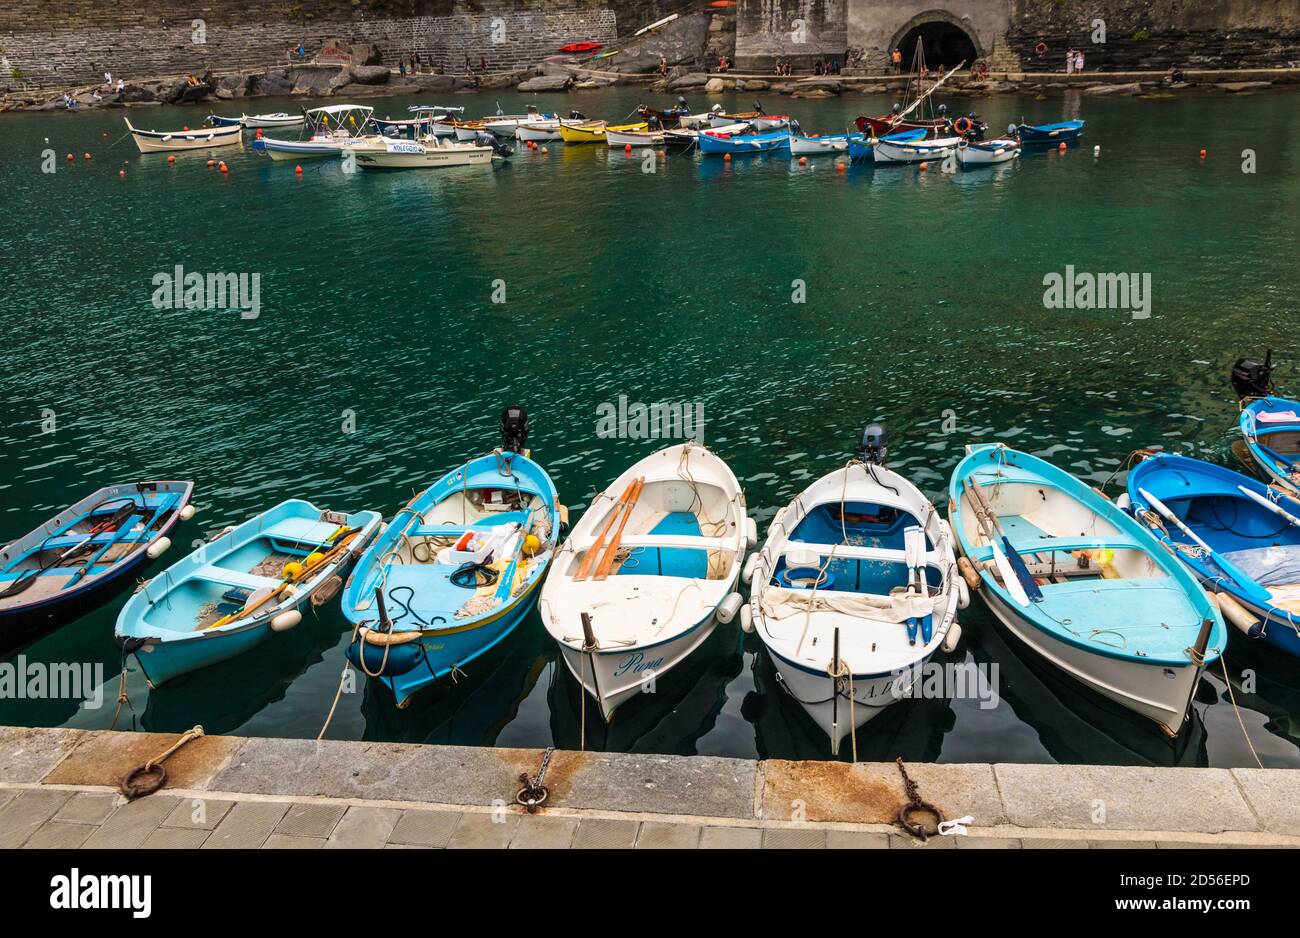 Vue panoramique sur le port de Vernazza dans la zone côtière des Cinque Terre. Sur l'eau turquoise peu profonde, beaucoup de petits bateaux flottent en... Banque D'Images